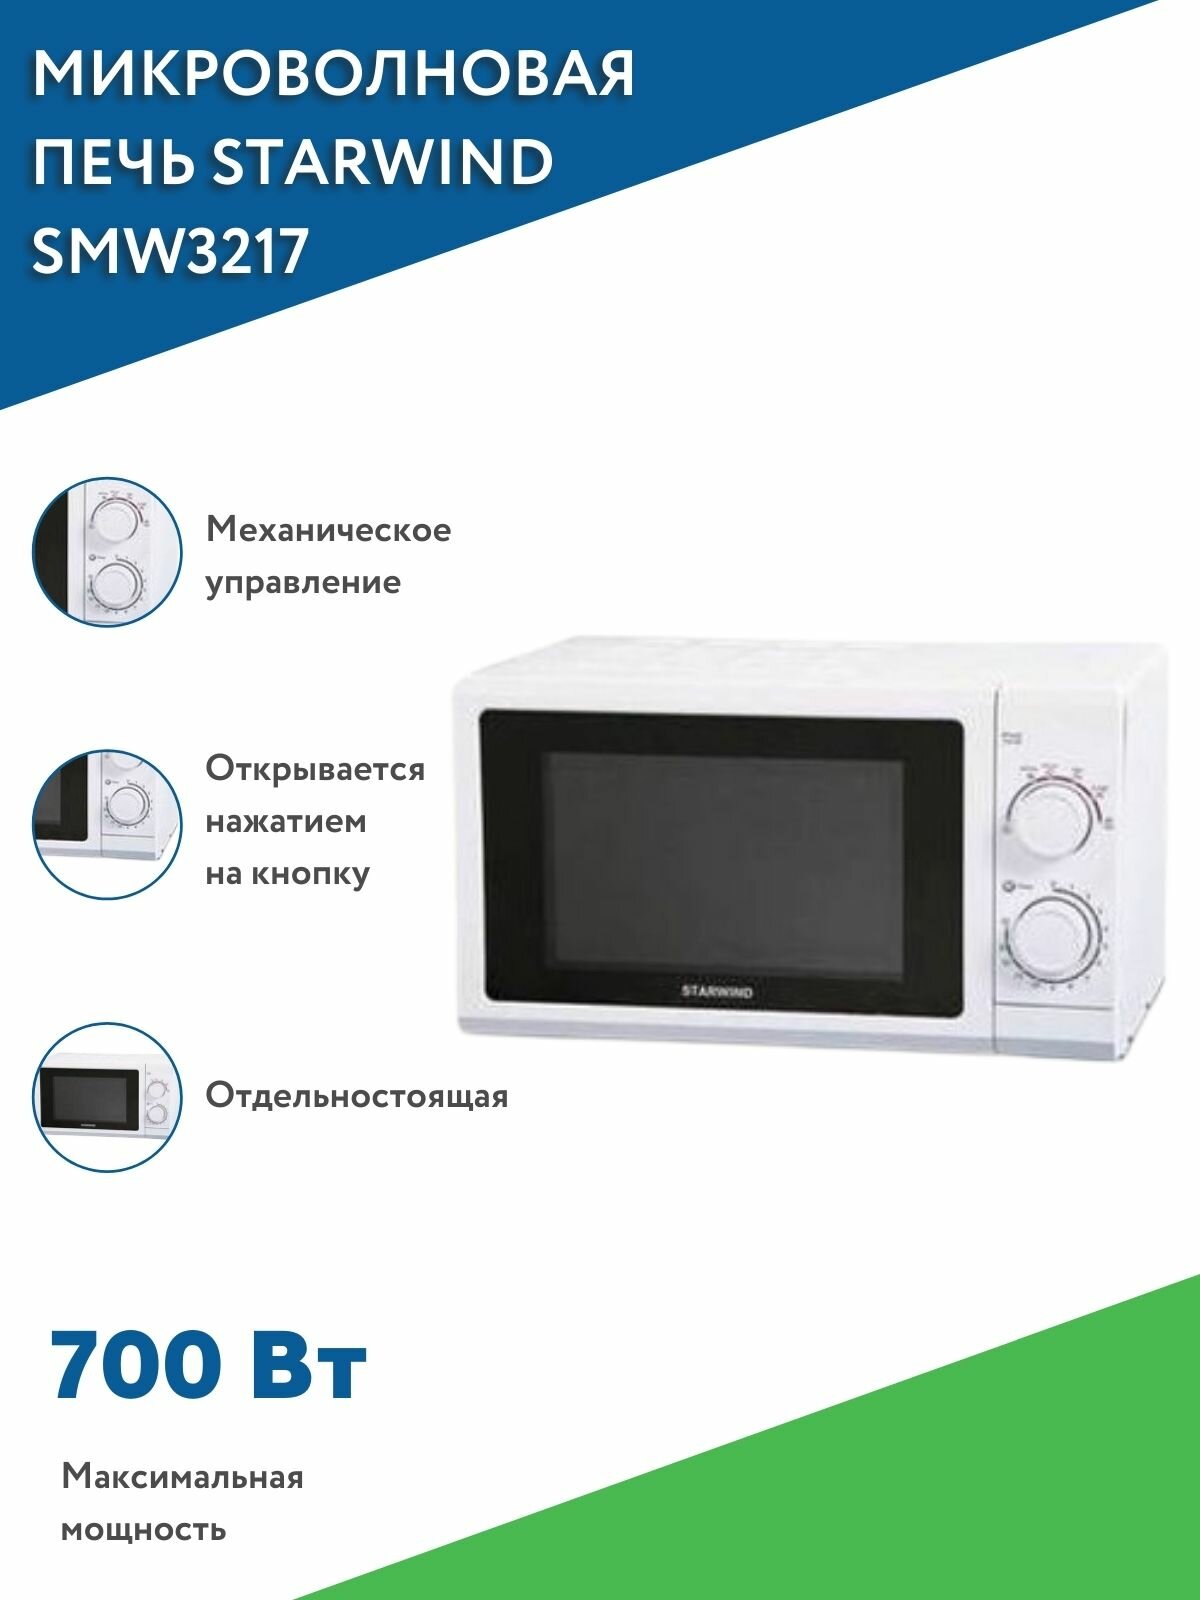 Микроволновая печь Starwind SMW3217 / Микроволновка / СВЧ, белая